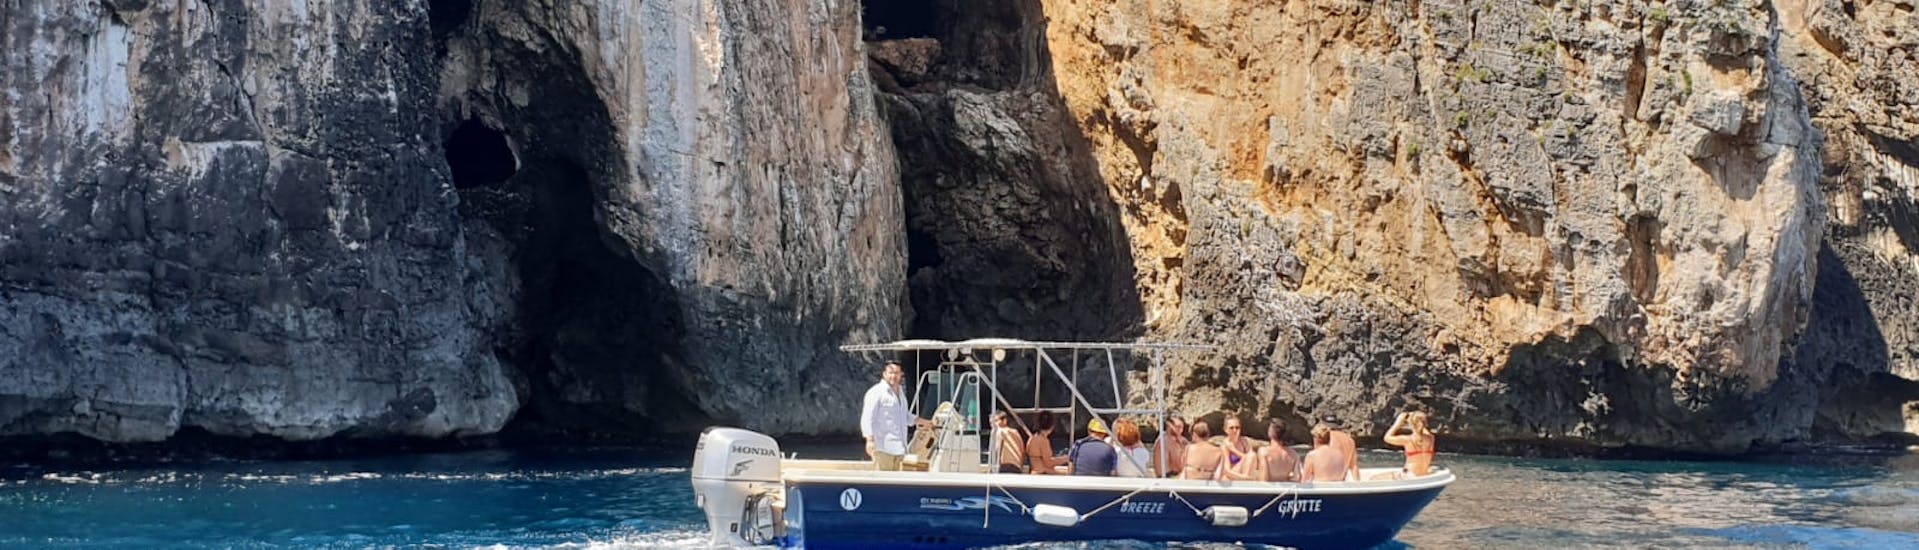 Vista di una barrca che naviga vicino alla costa rocciosa di Santa Maria di Leuca durante il giro in barca alle grotte dell'Adriatico da Santa Maria Leuca con Leuca Due Mari.